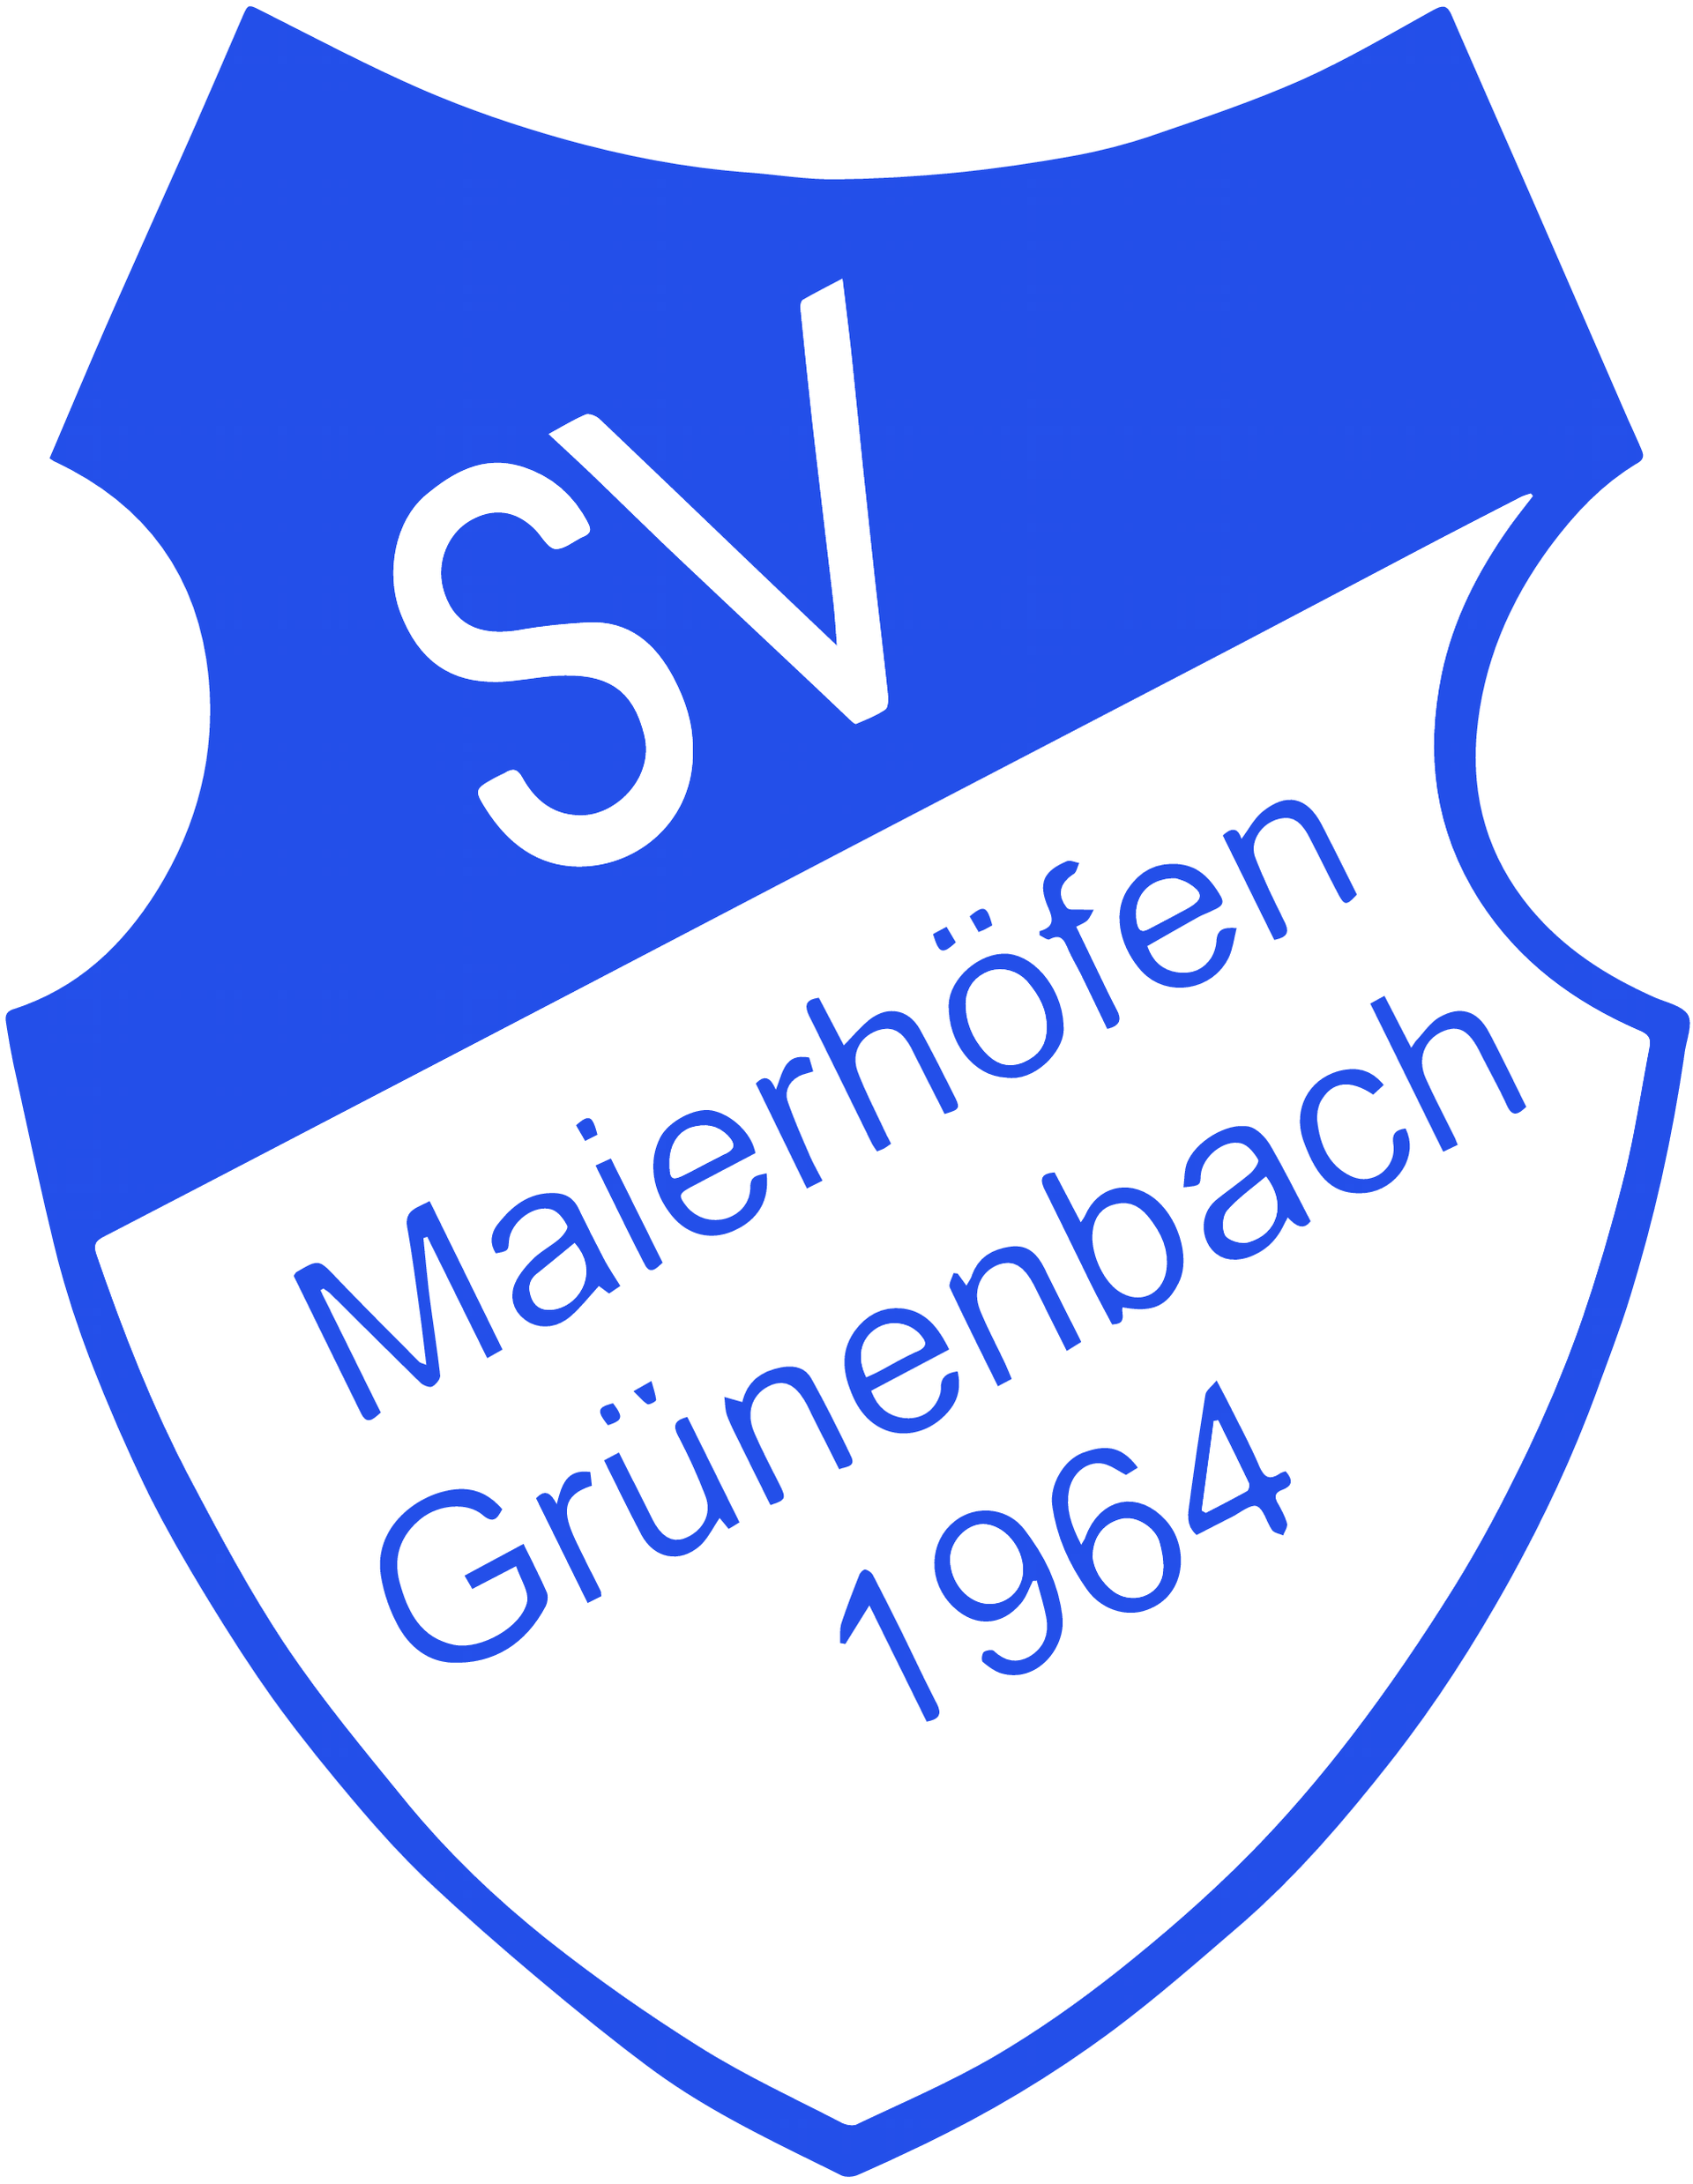 (c) Sv-maierhoefen-gruenenbach.de